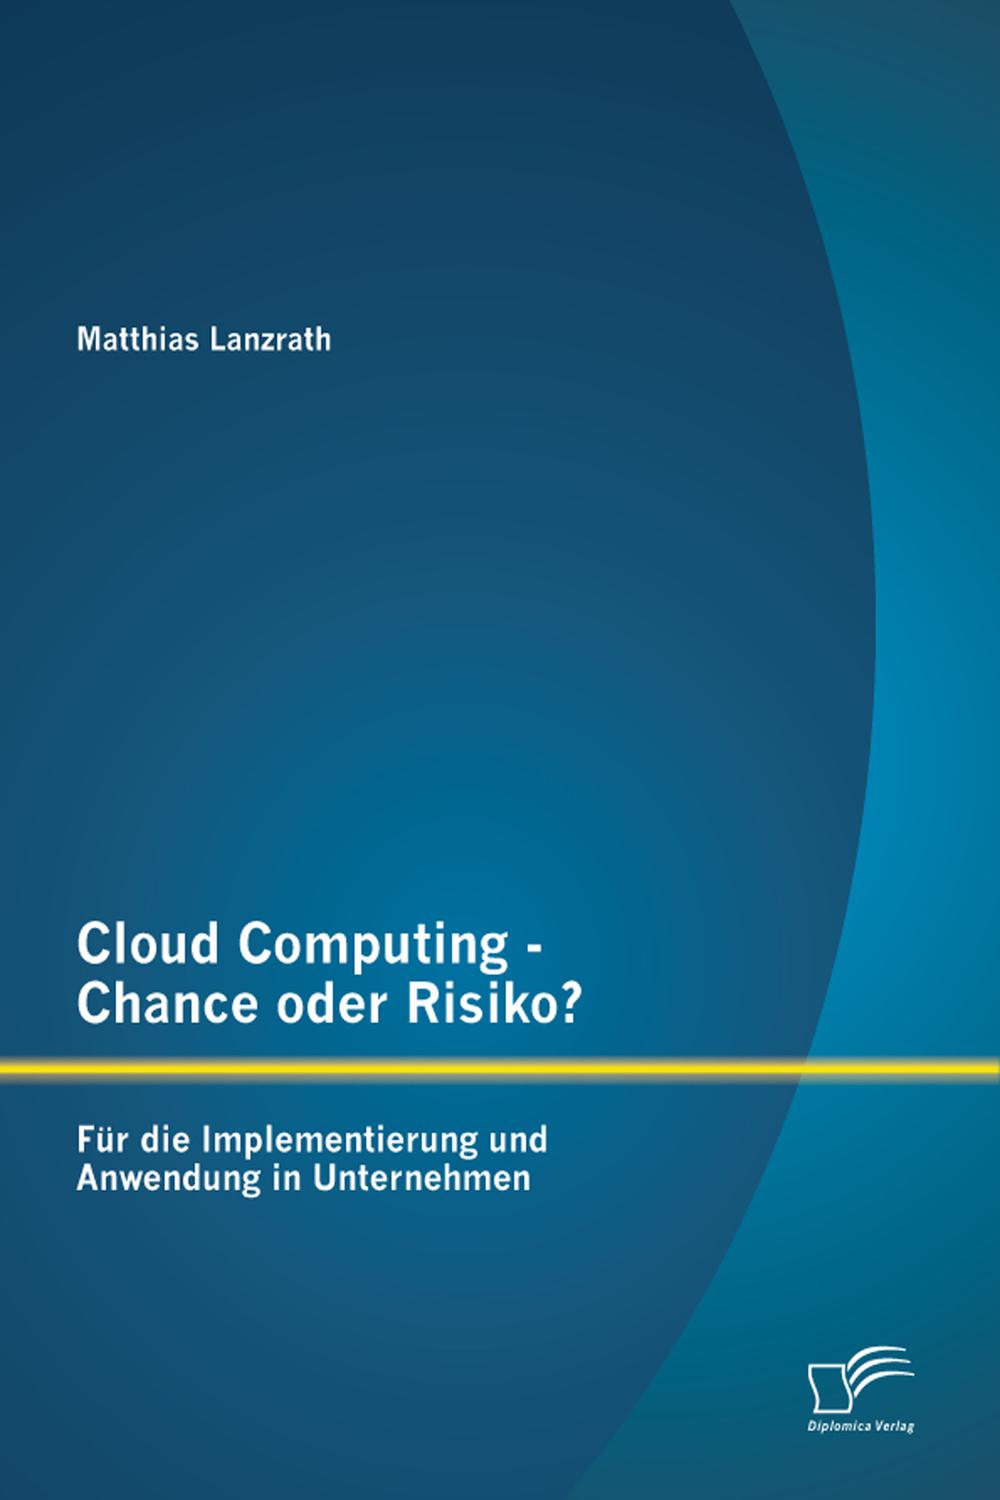 Cloud Computing - Chance oder Risiko? Für die Implementierung und Anwendung in Unternehmen - Matthias Lanzrath